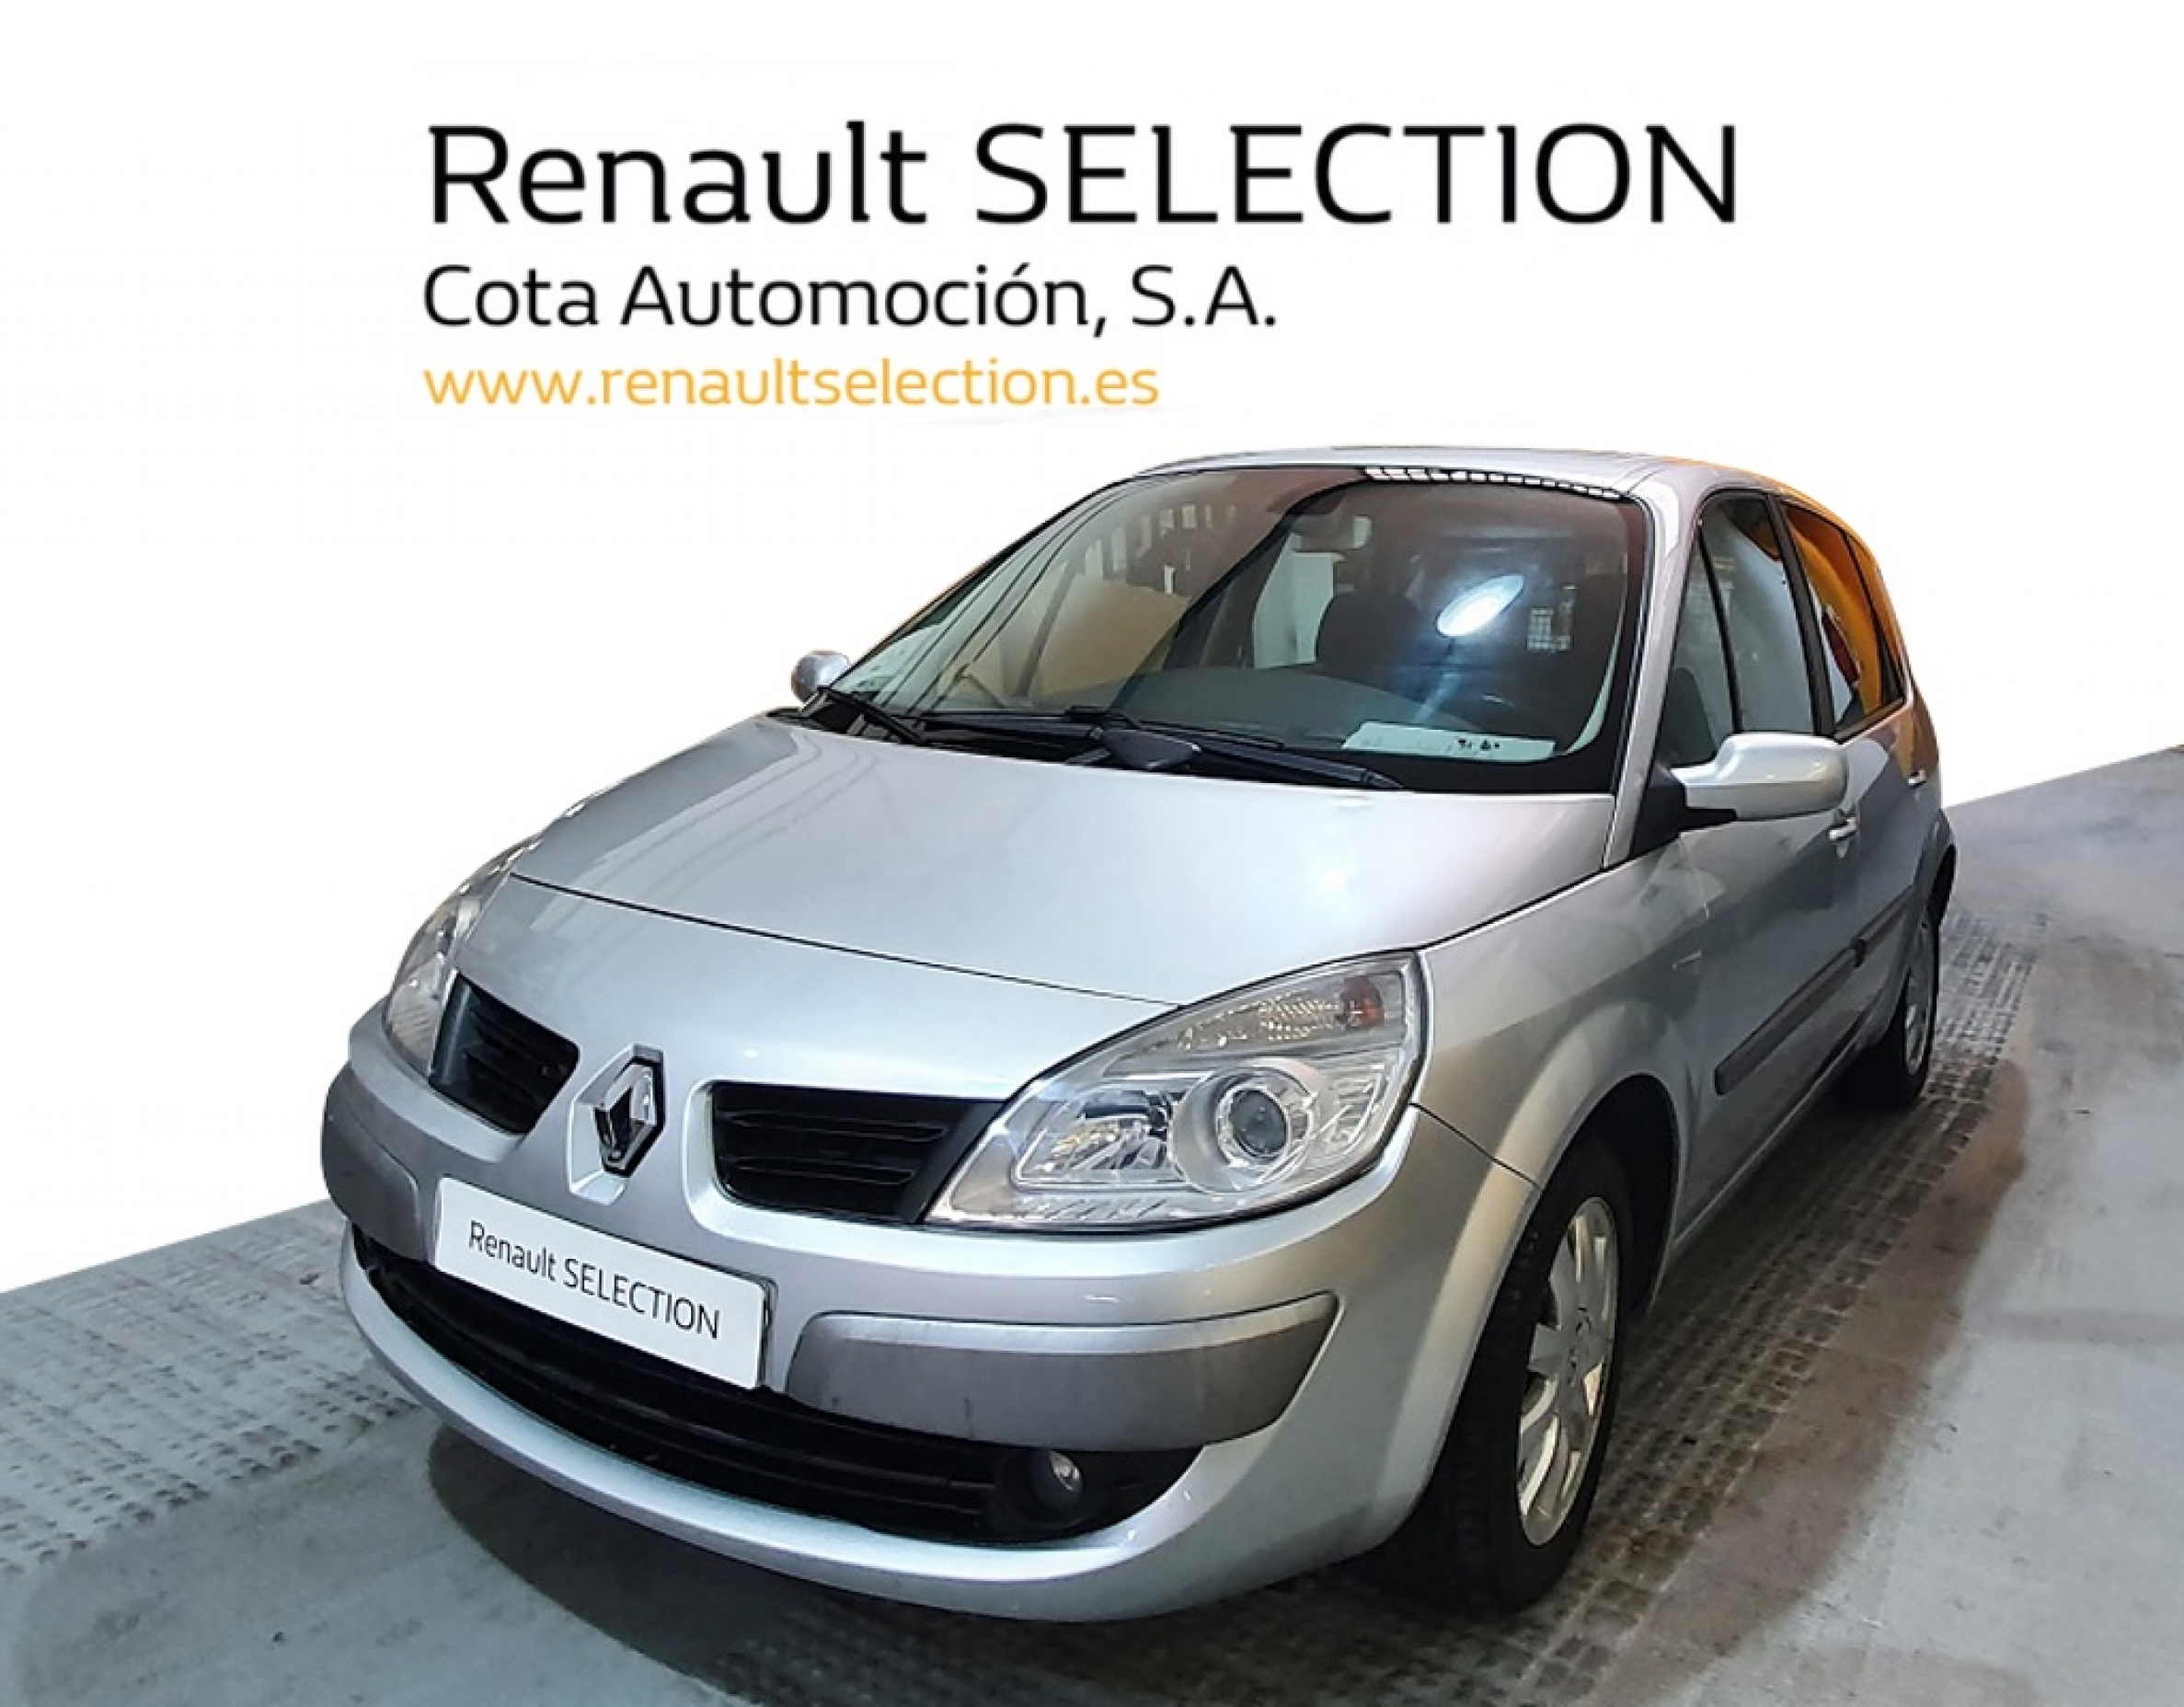 Renault 3800€ - Segunda mano y ocasión